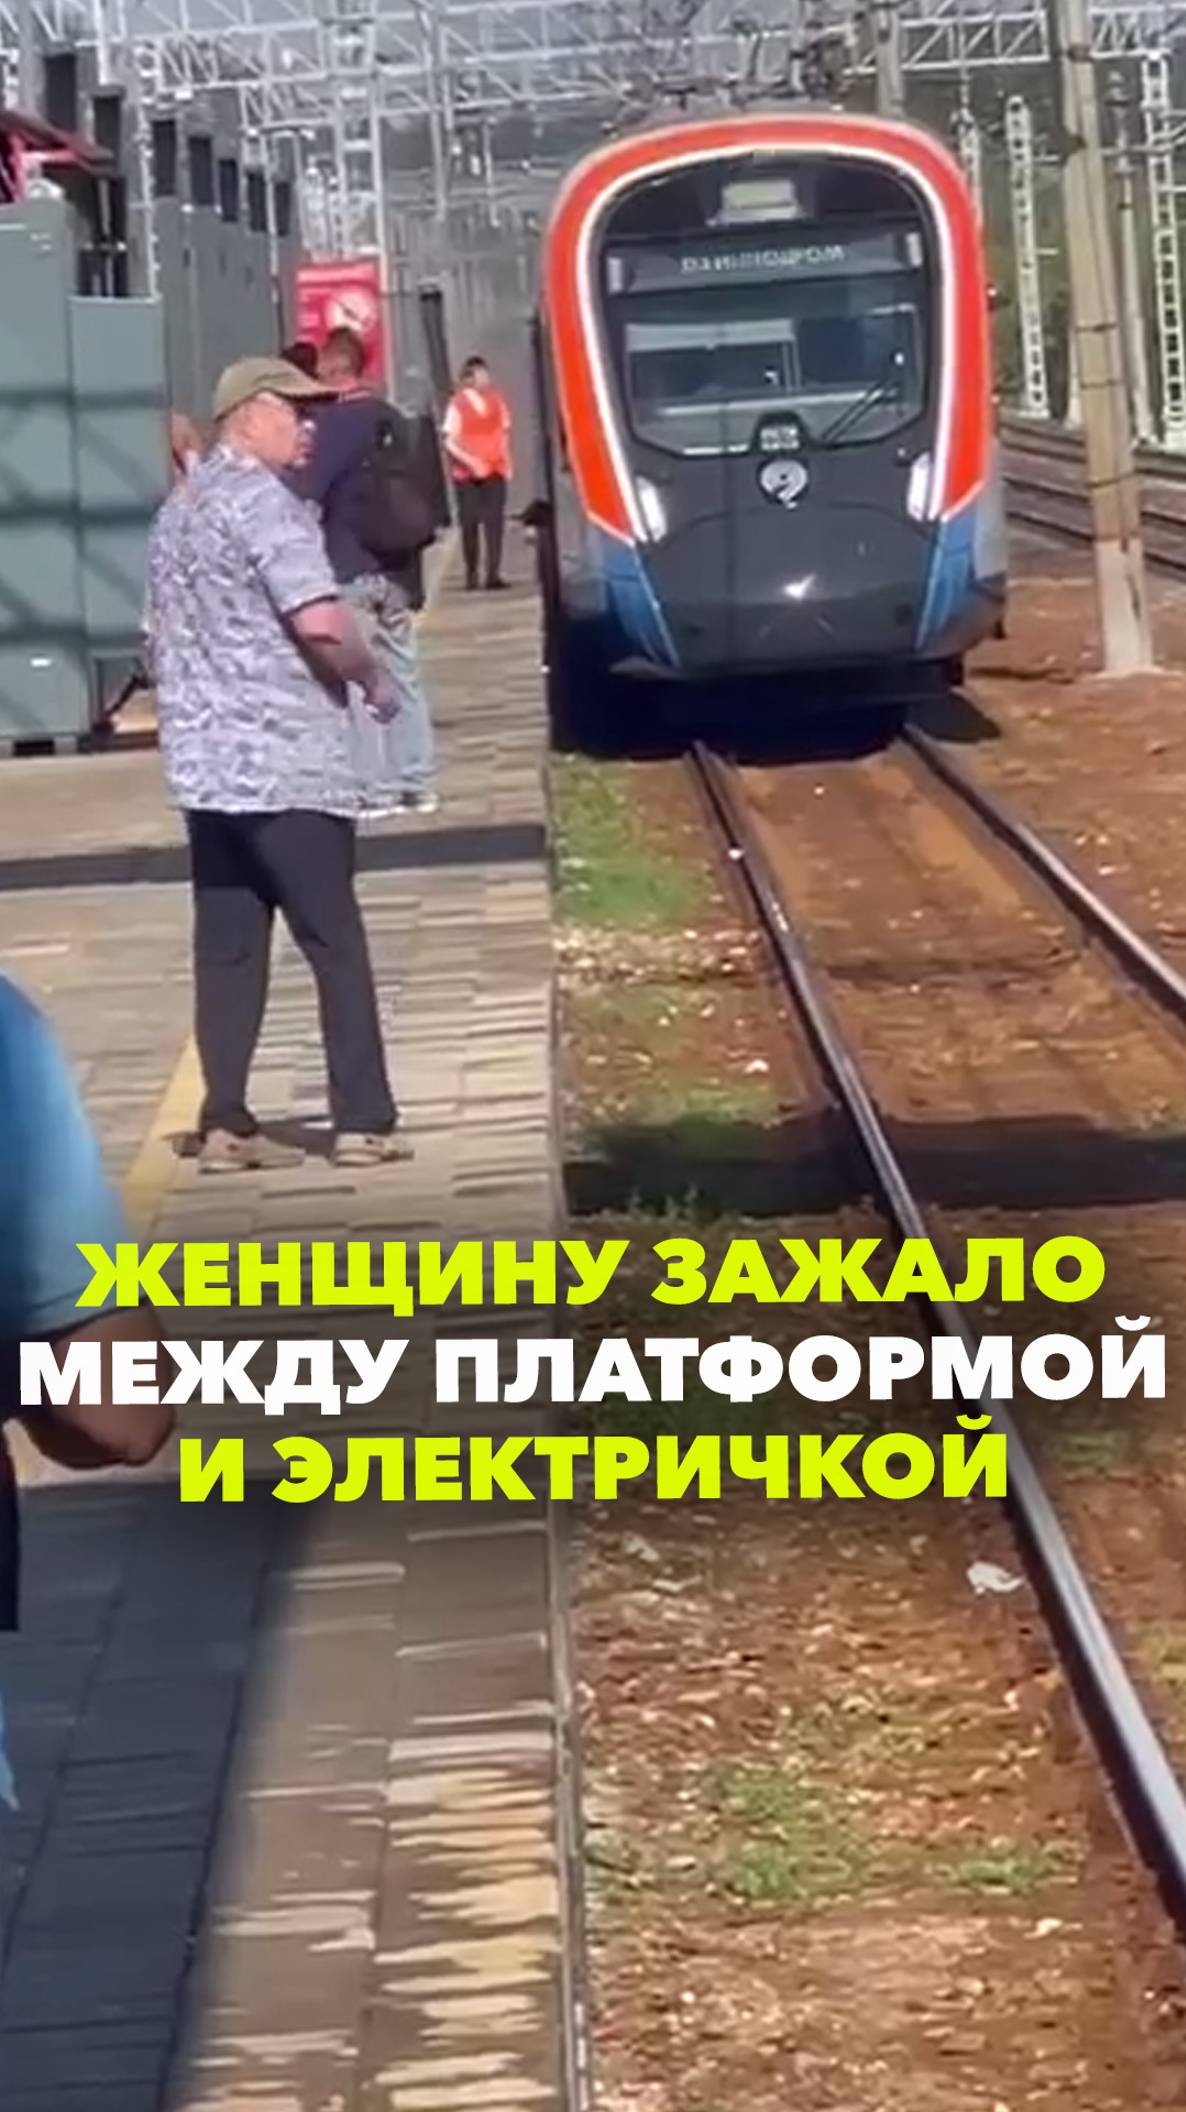 Женщину зажало между платформой и поездом в Красково. Люберцы, МЦД-3